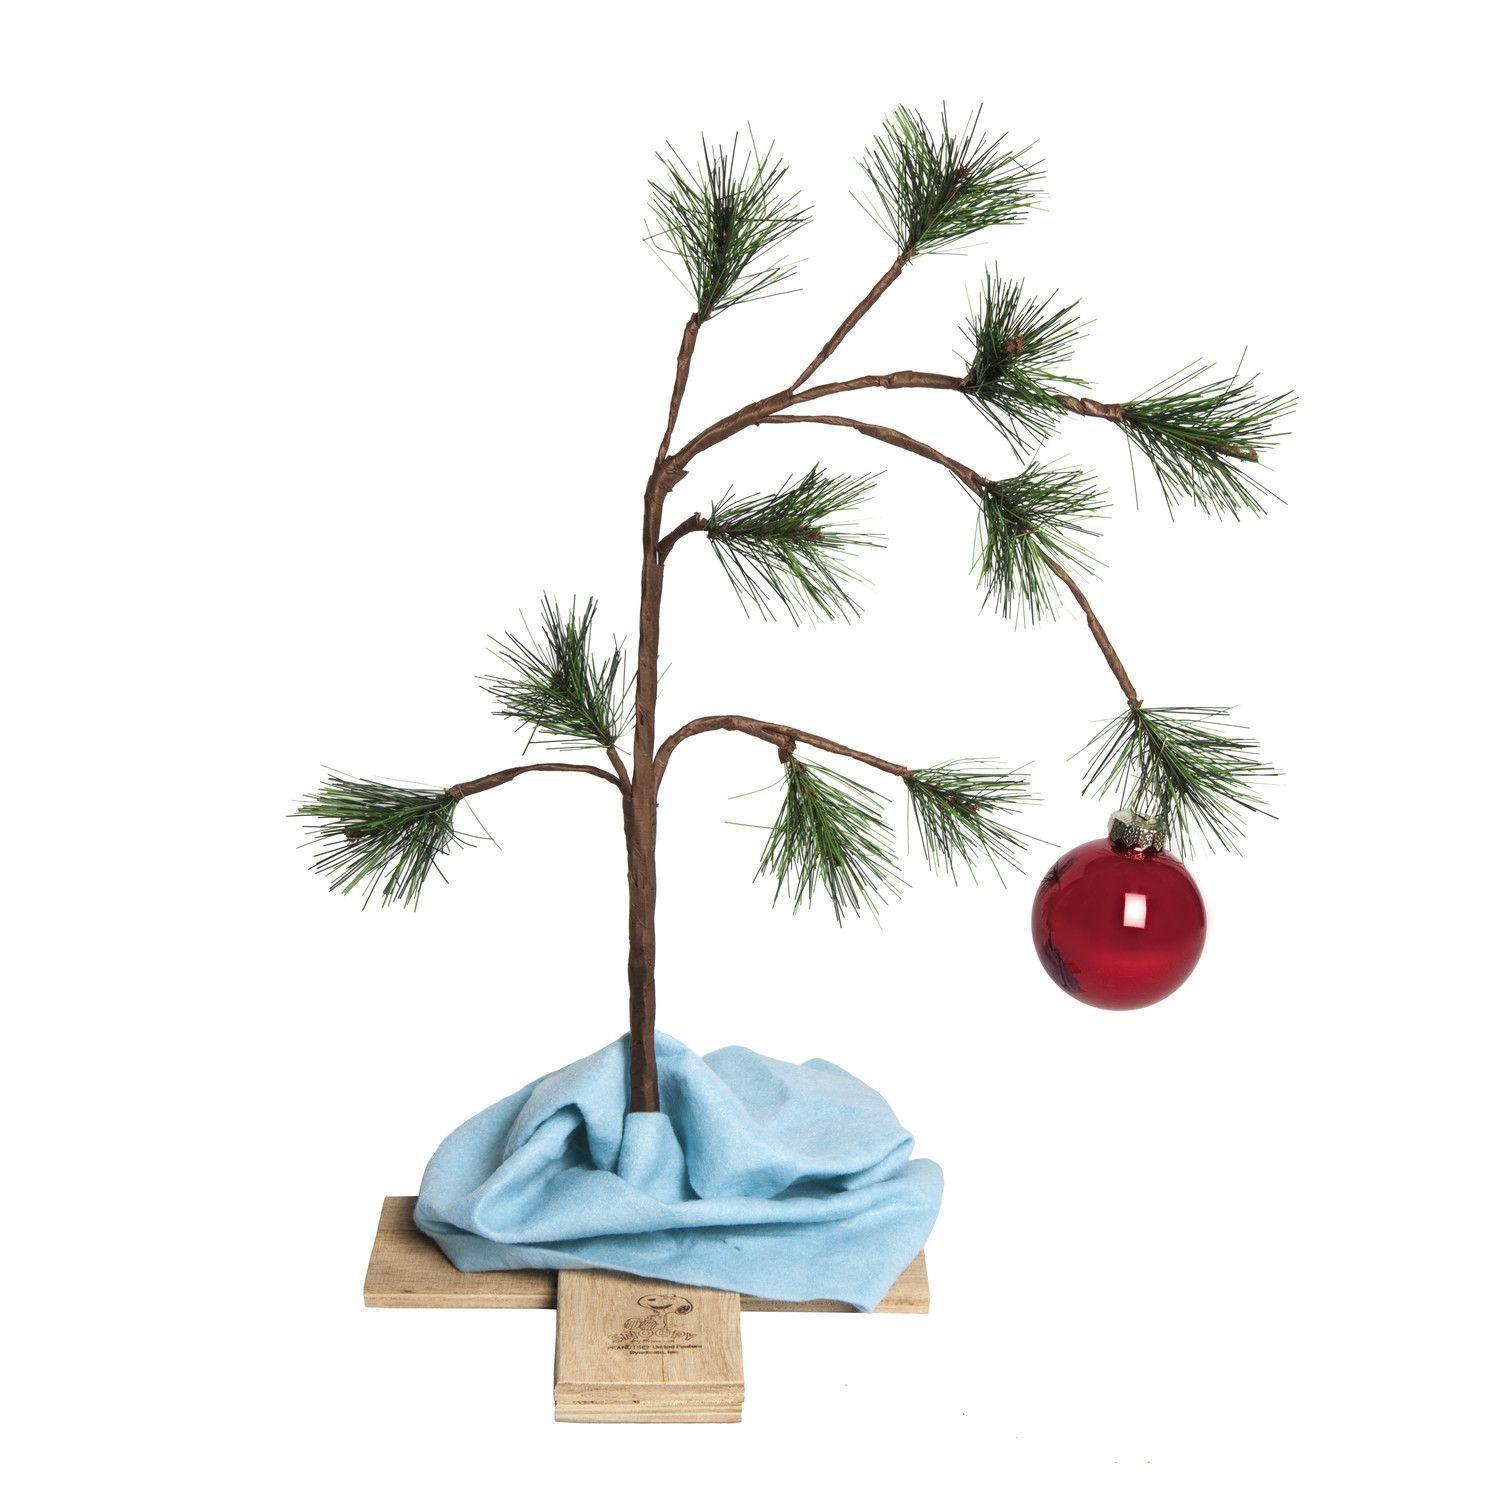 Xmas Stuff For > Charlie Brown Christmas Tree Image